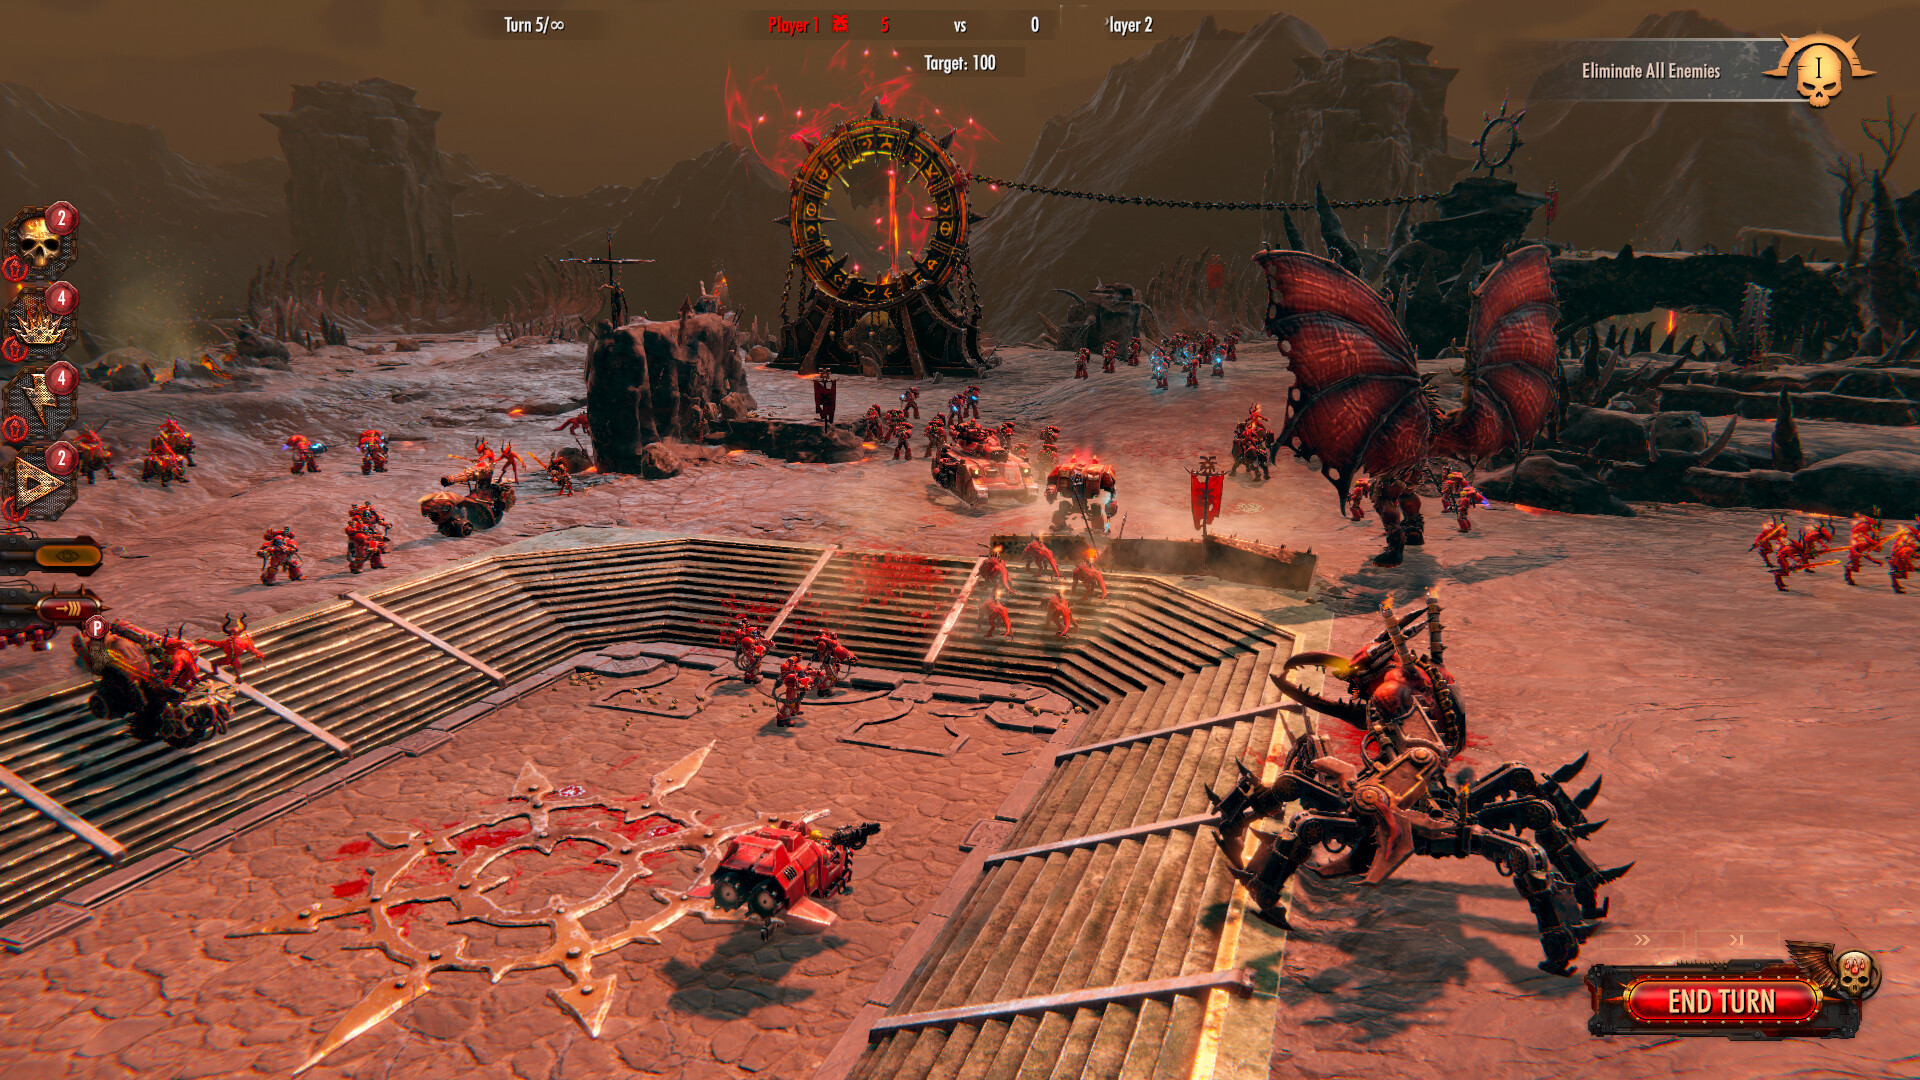 Warhammer 40,000: Battlesector - Daemons of Khorne DLC Steam CD Key 3.71$